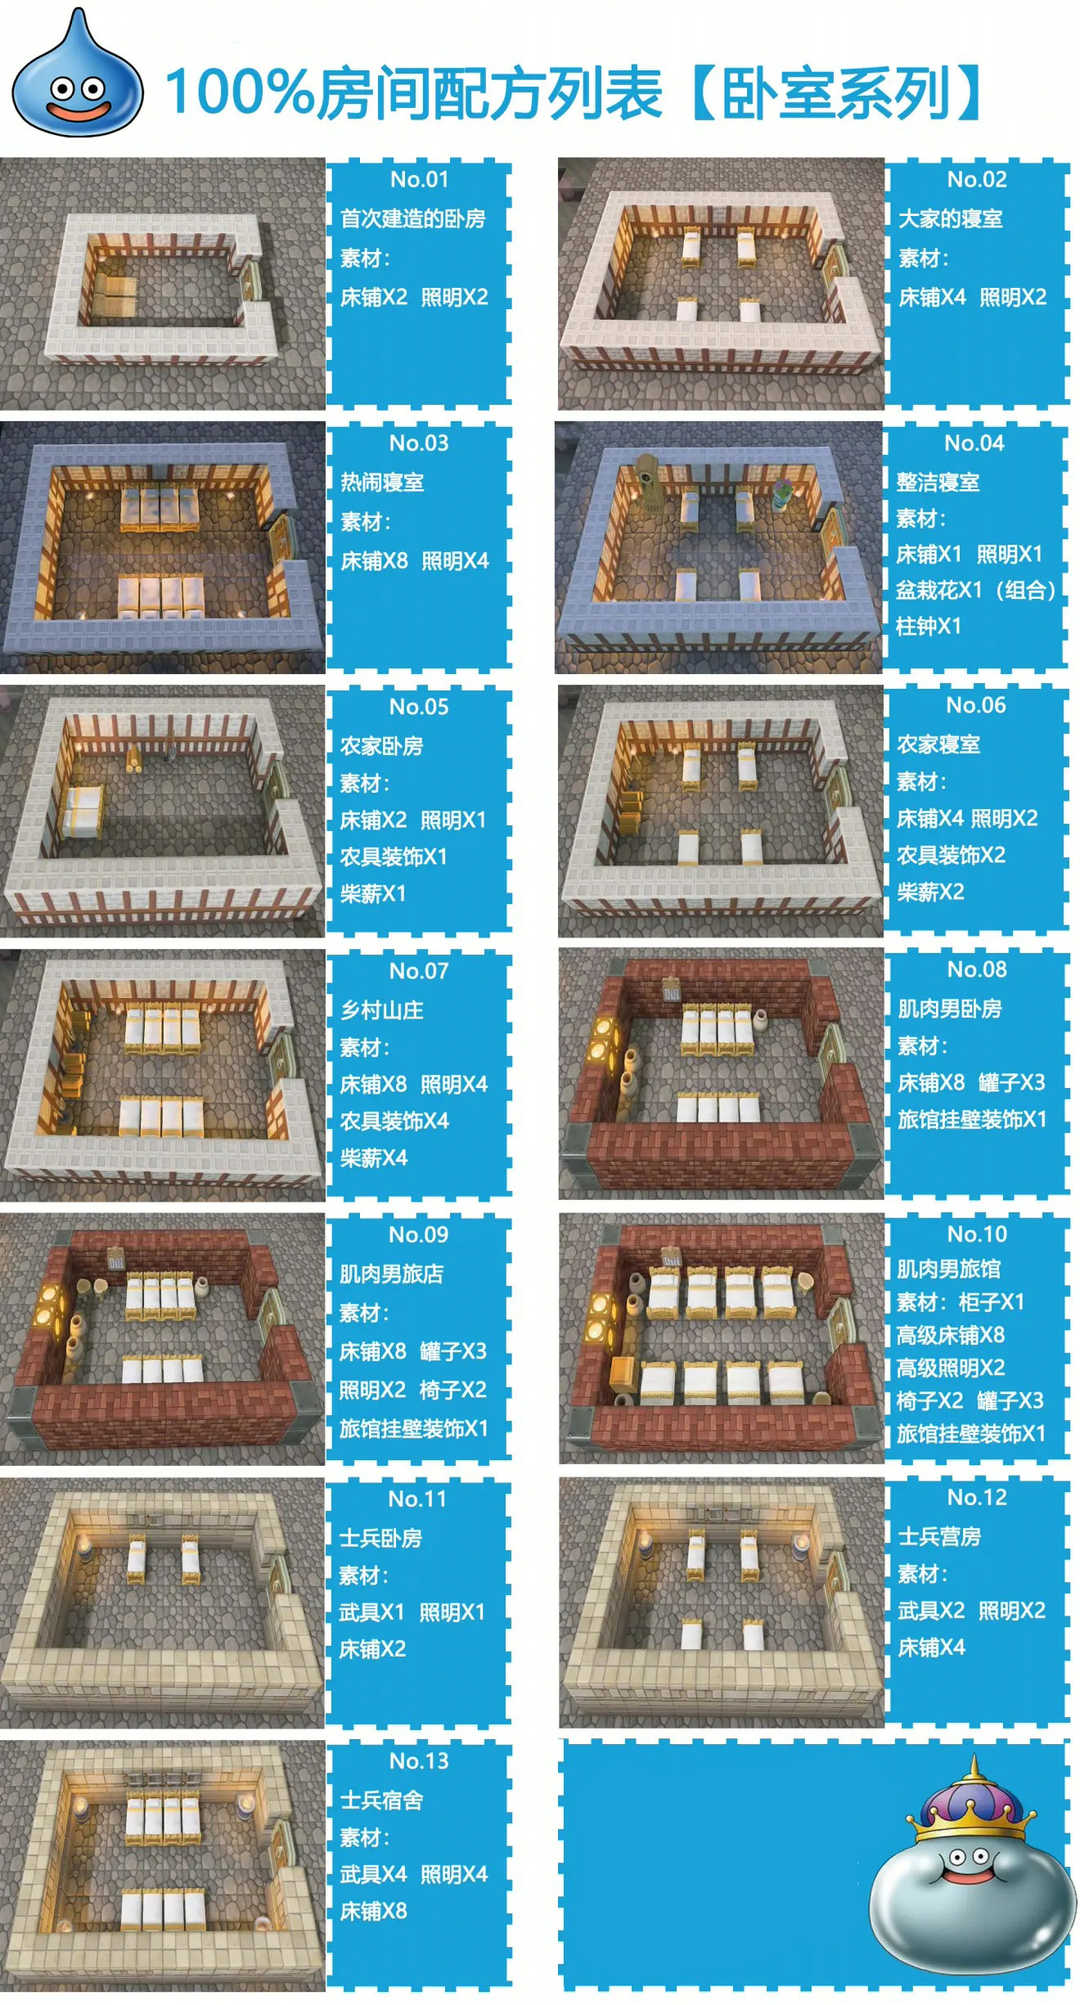 创世小玩家2房间配方图集介绍（小玩家二层房子判定方法）  第2张